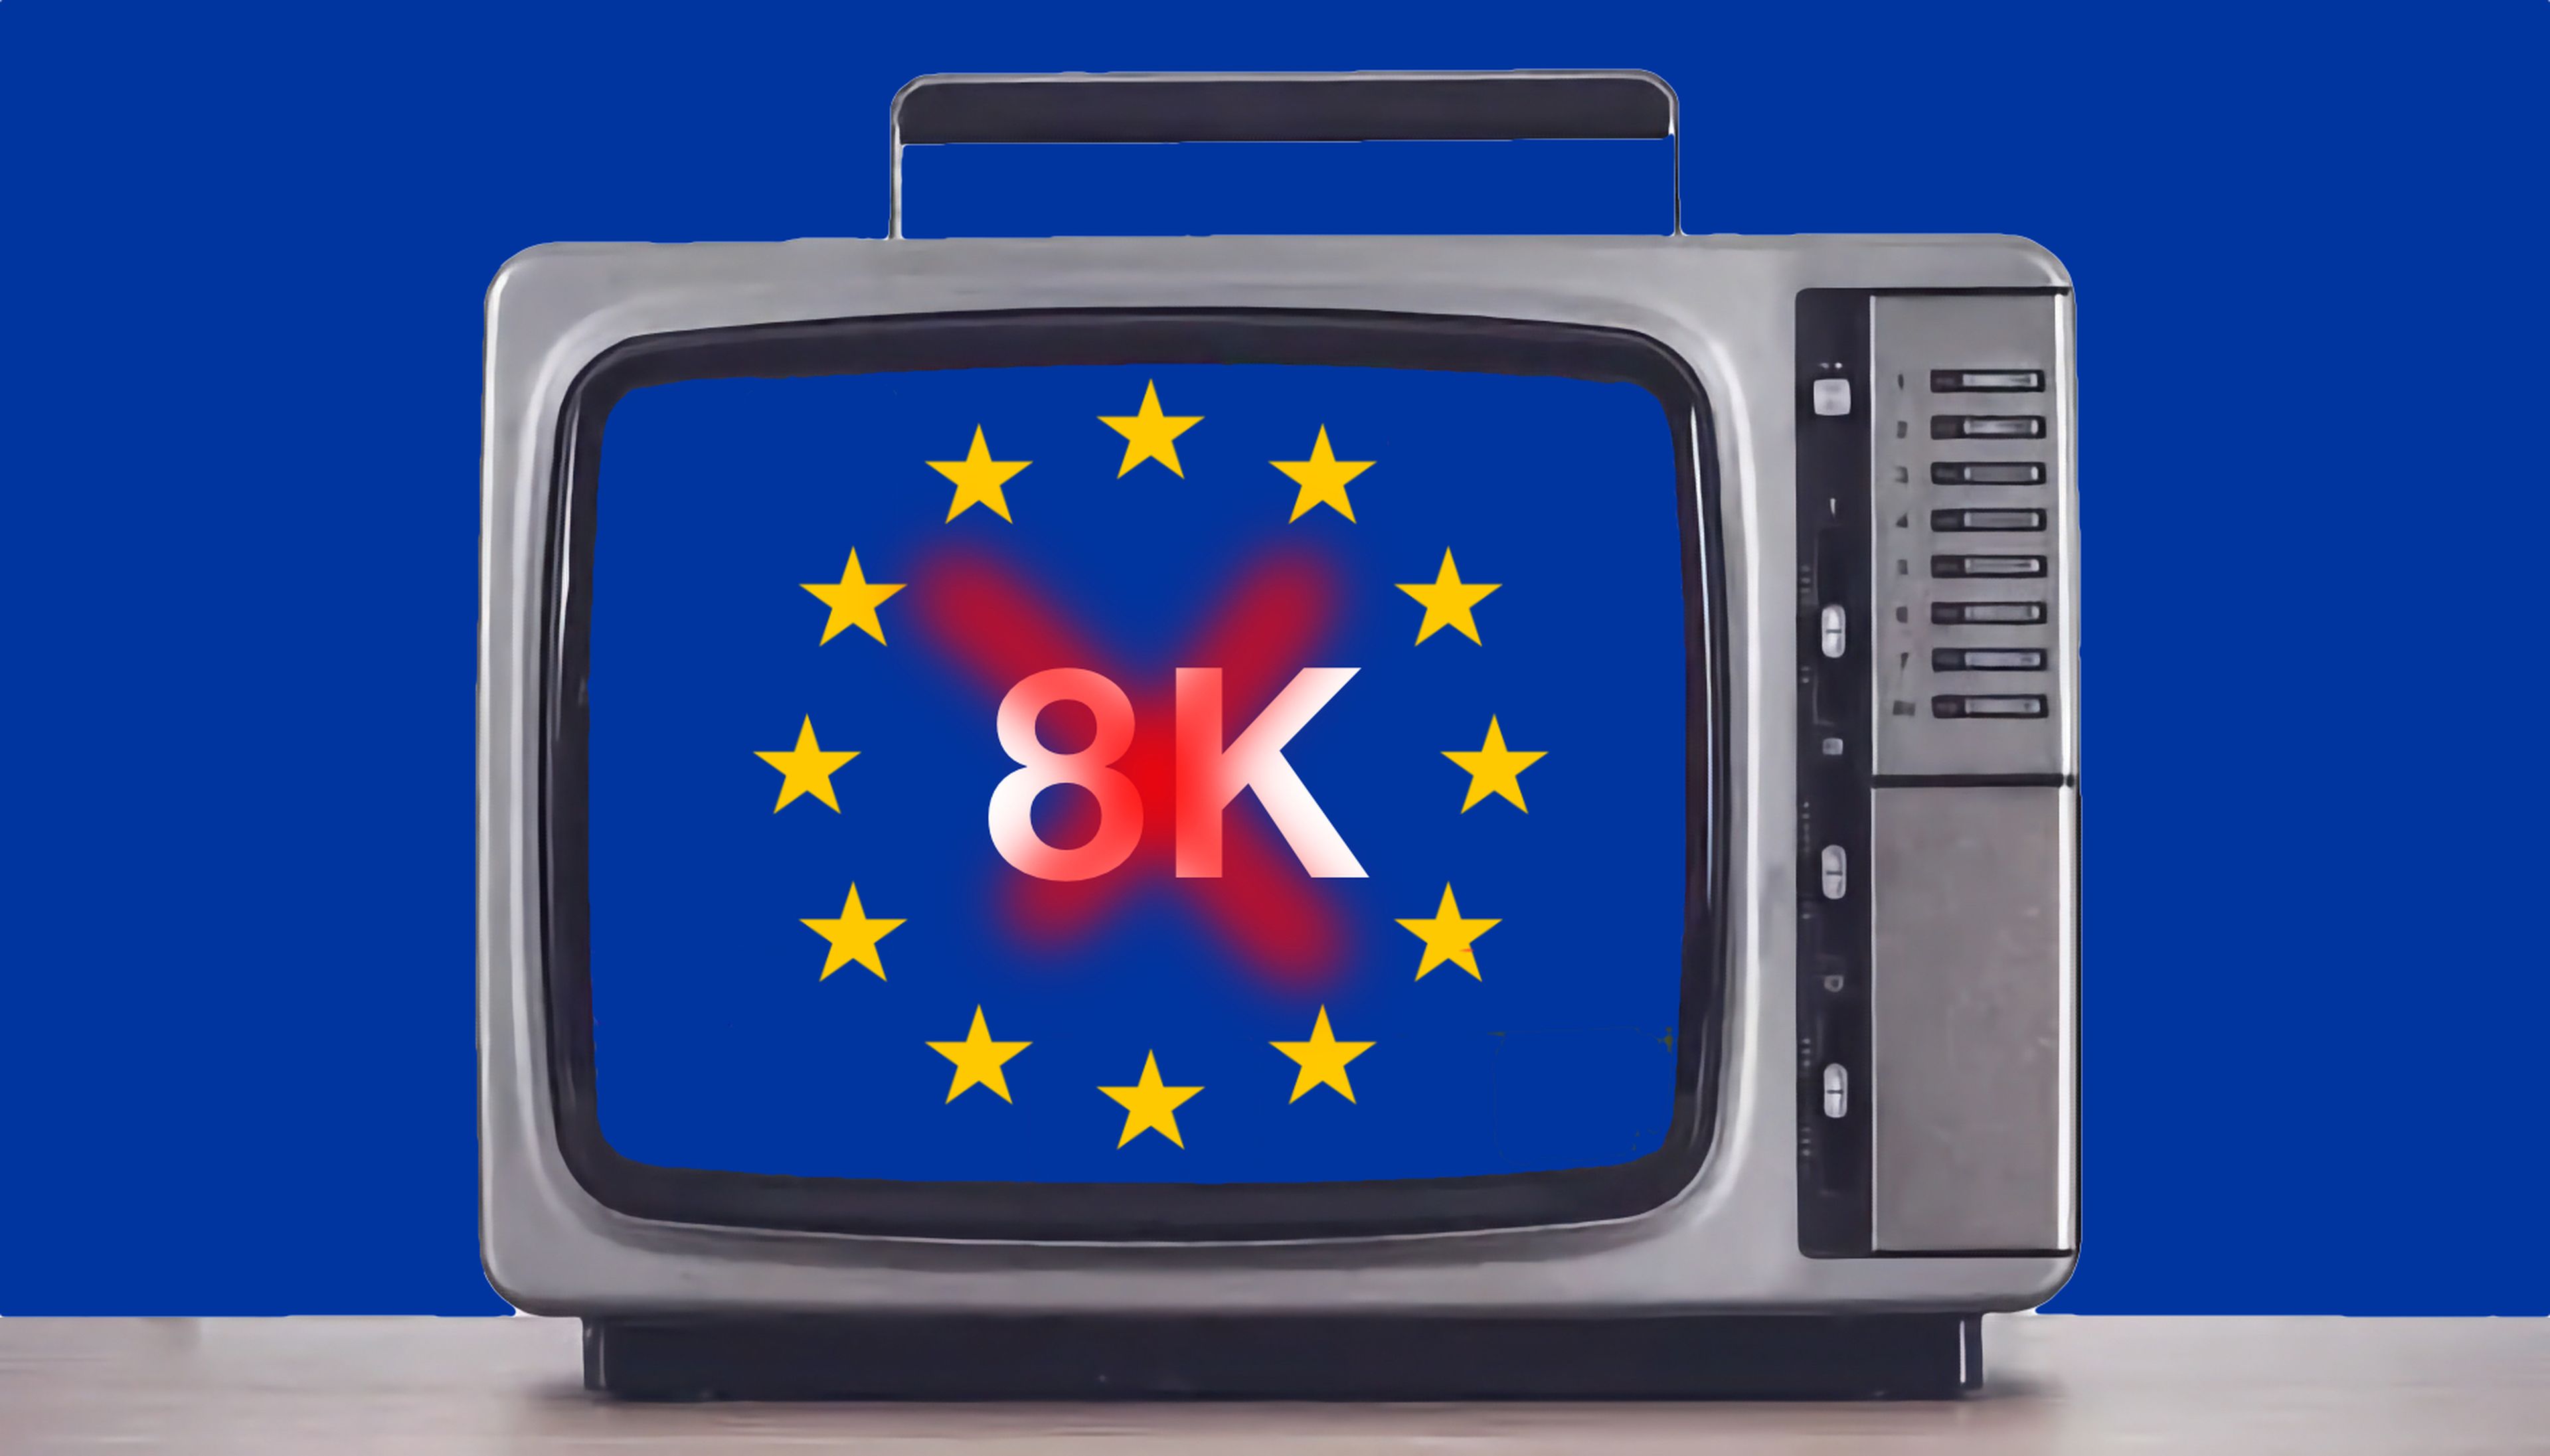 8K prohibido en Europa